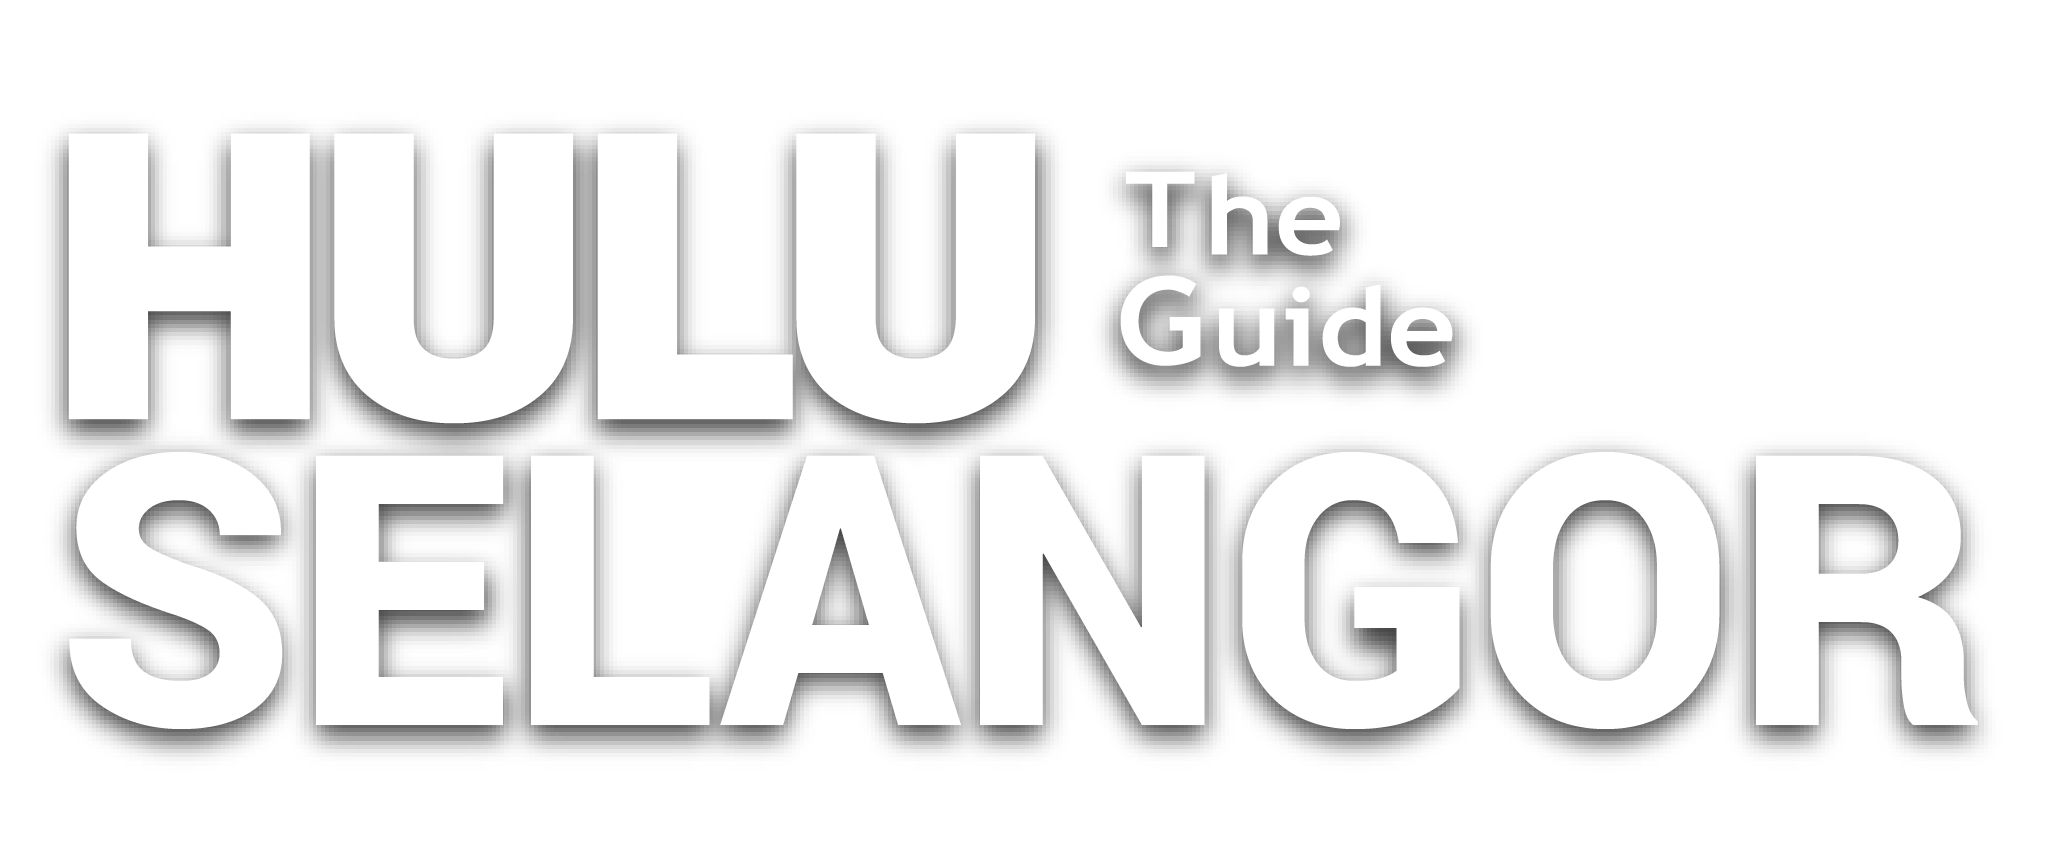 Hulu Selangor The Guide